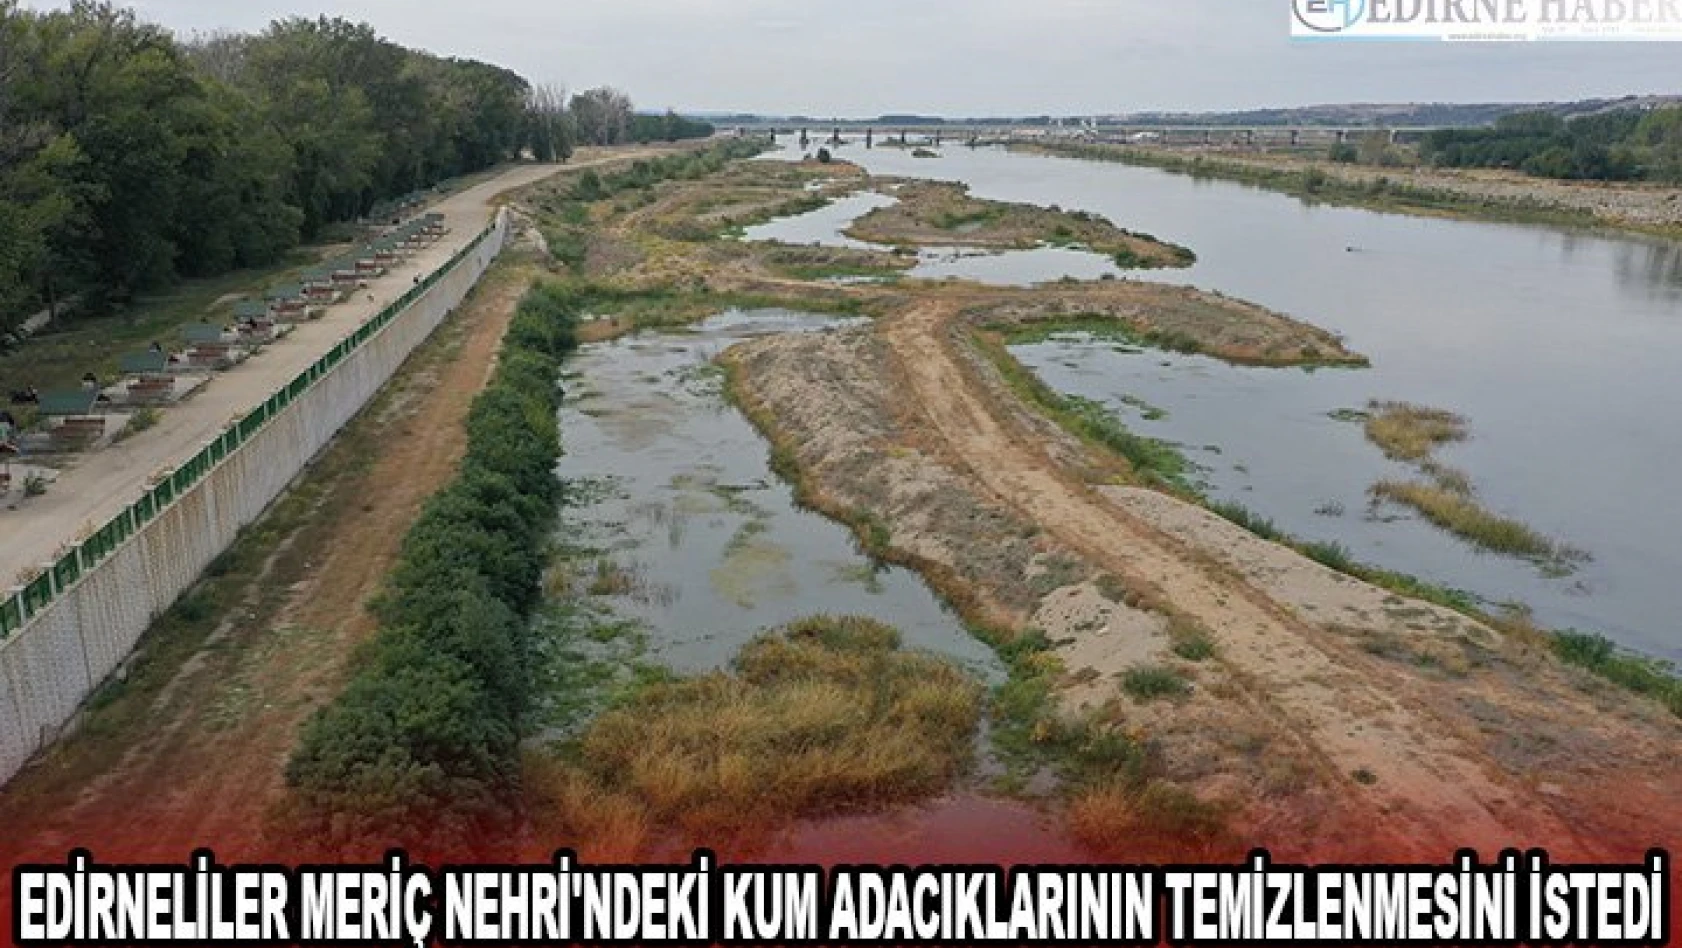 Edirneliler Meriç Nehri'ndeki kum adacıklarının temizlenmesini istedi